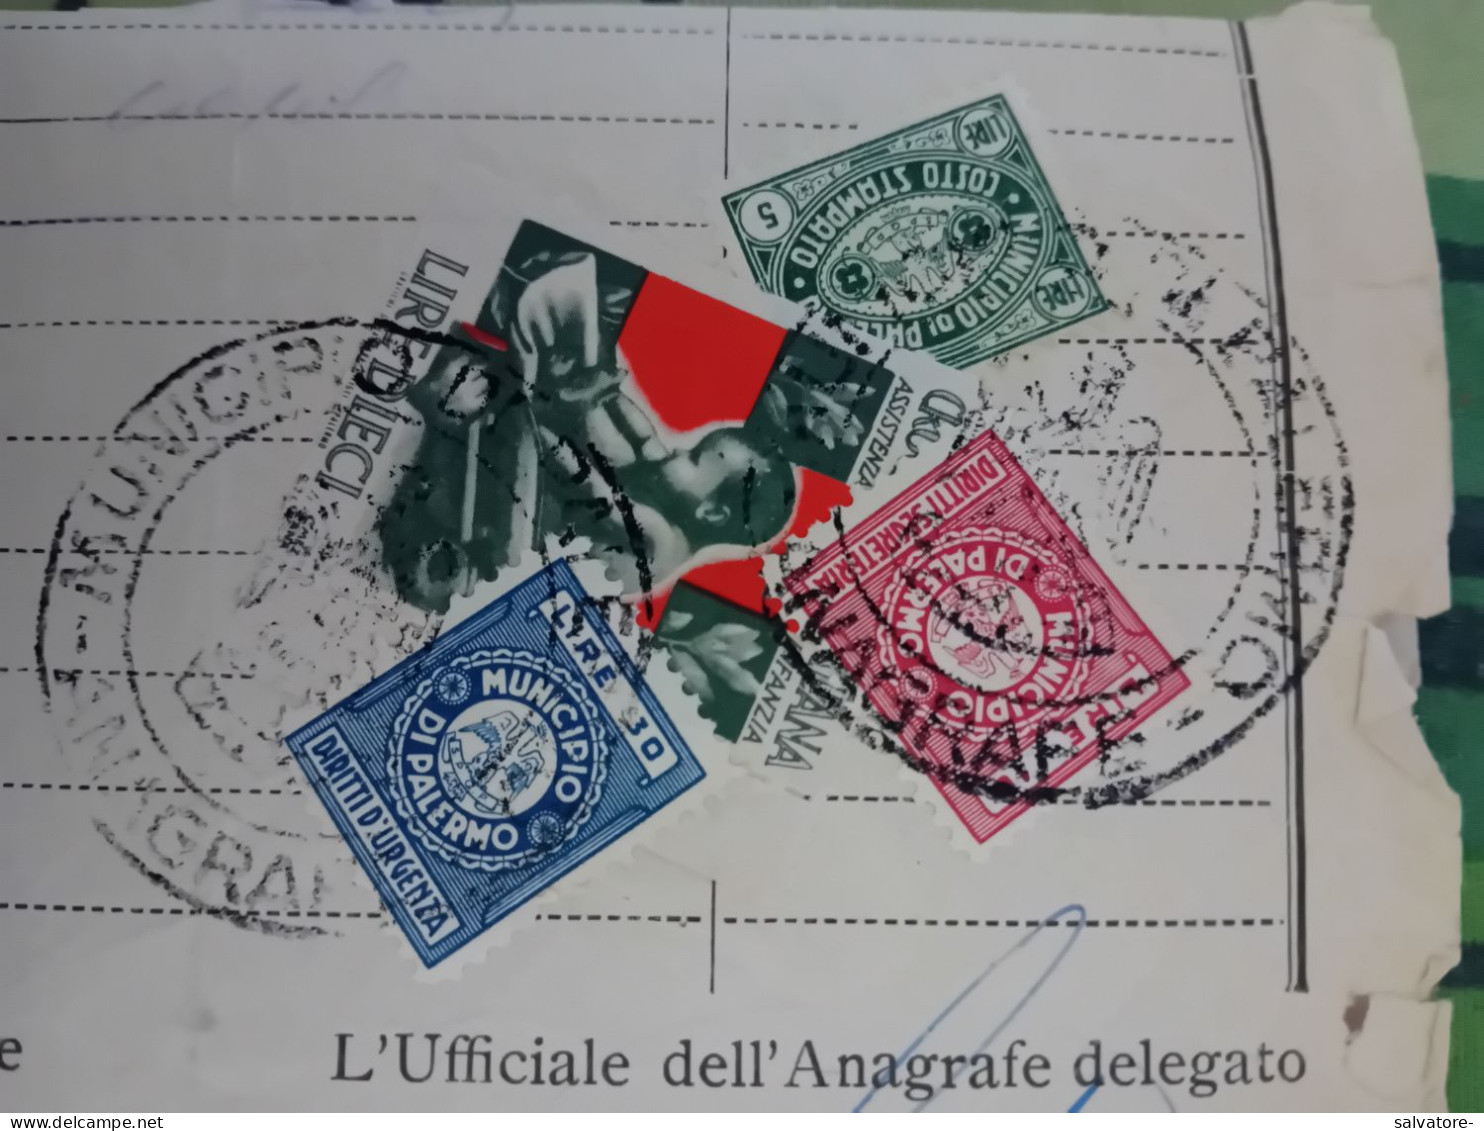 MARCA DA BOLLO CROCE ROSSA ITALIANA + ALTRE  3- 1958 - Revenue Stamps